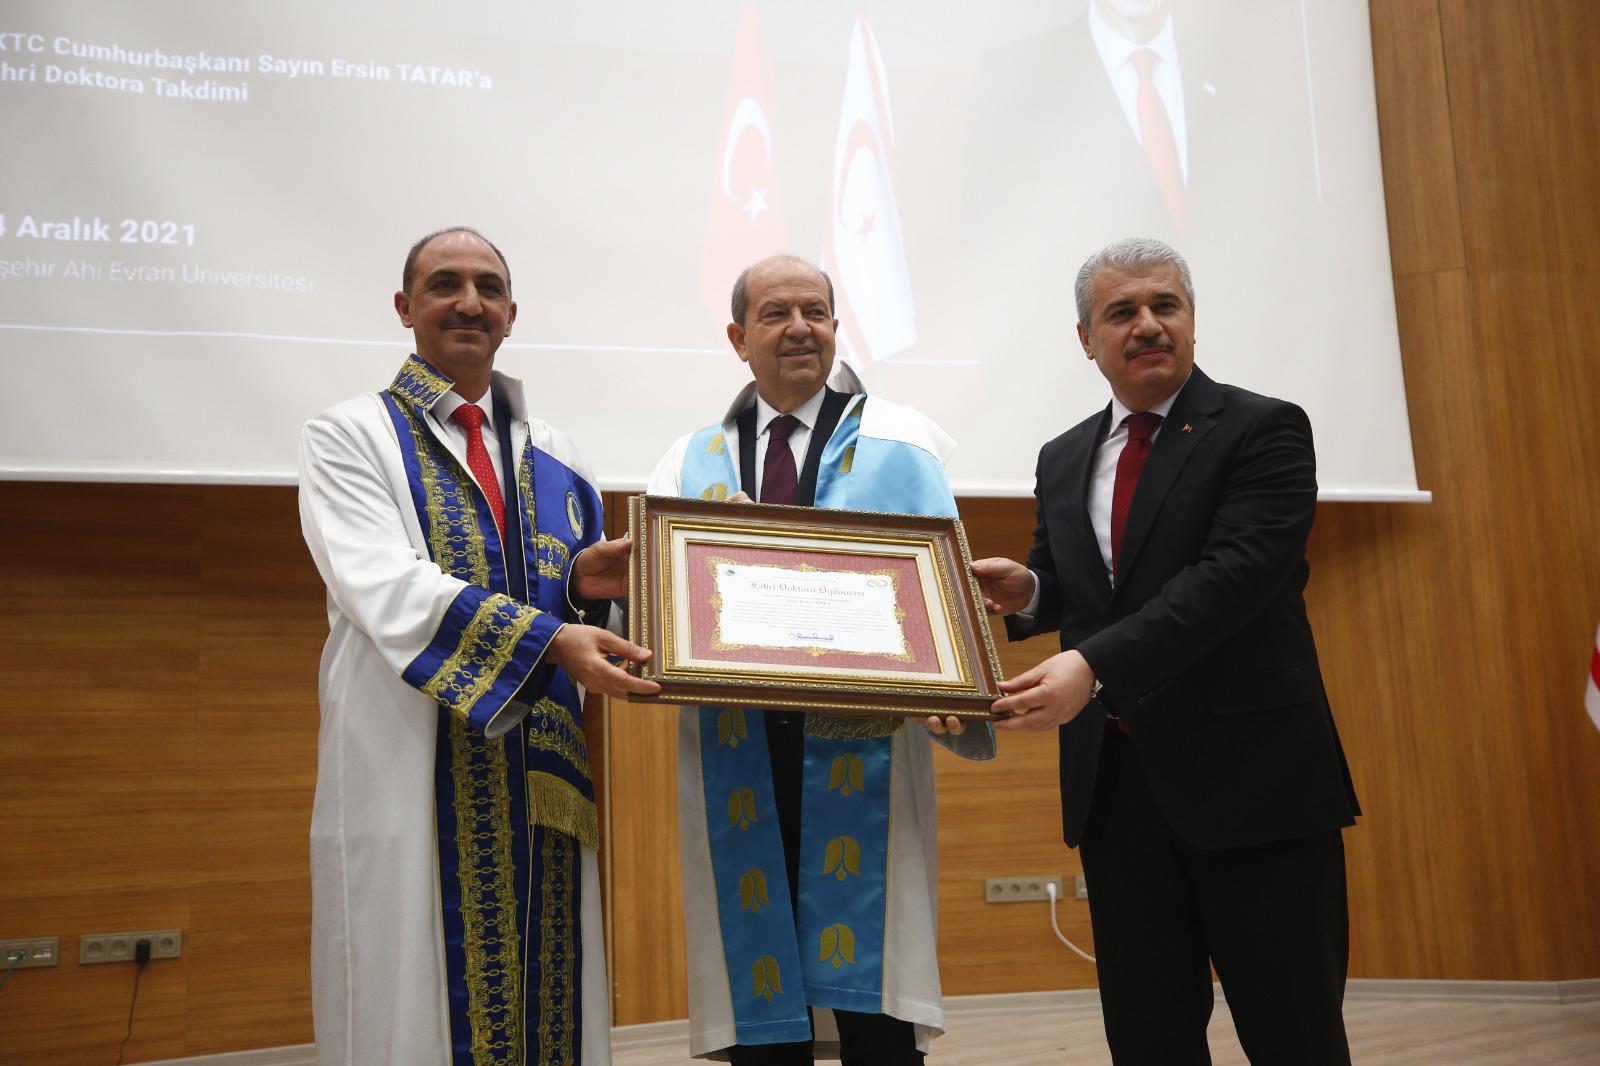 Cumhurbaşkanı Tatar’a Kırşehir’de Fahri Doktora takdim edildi